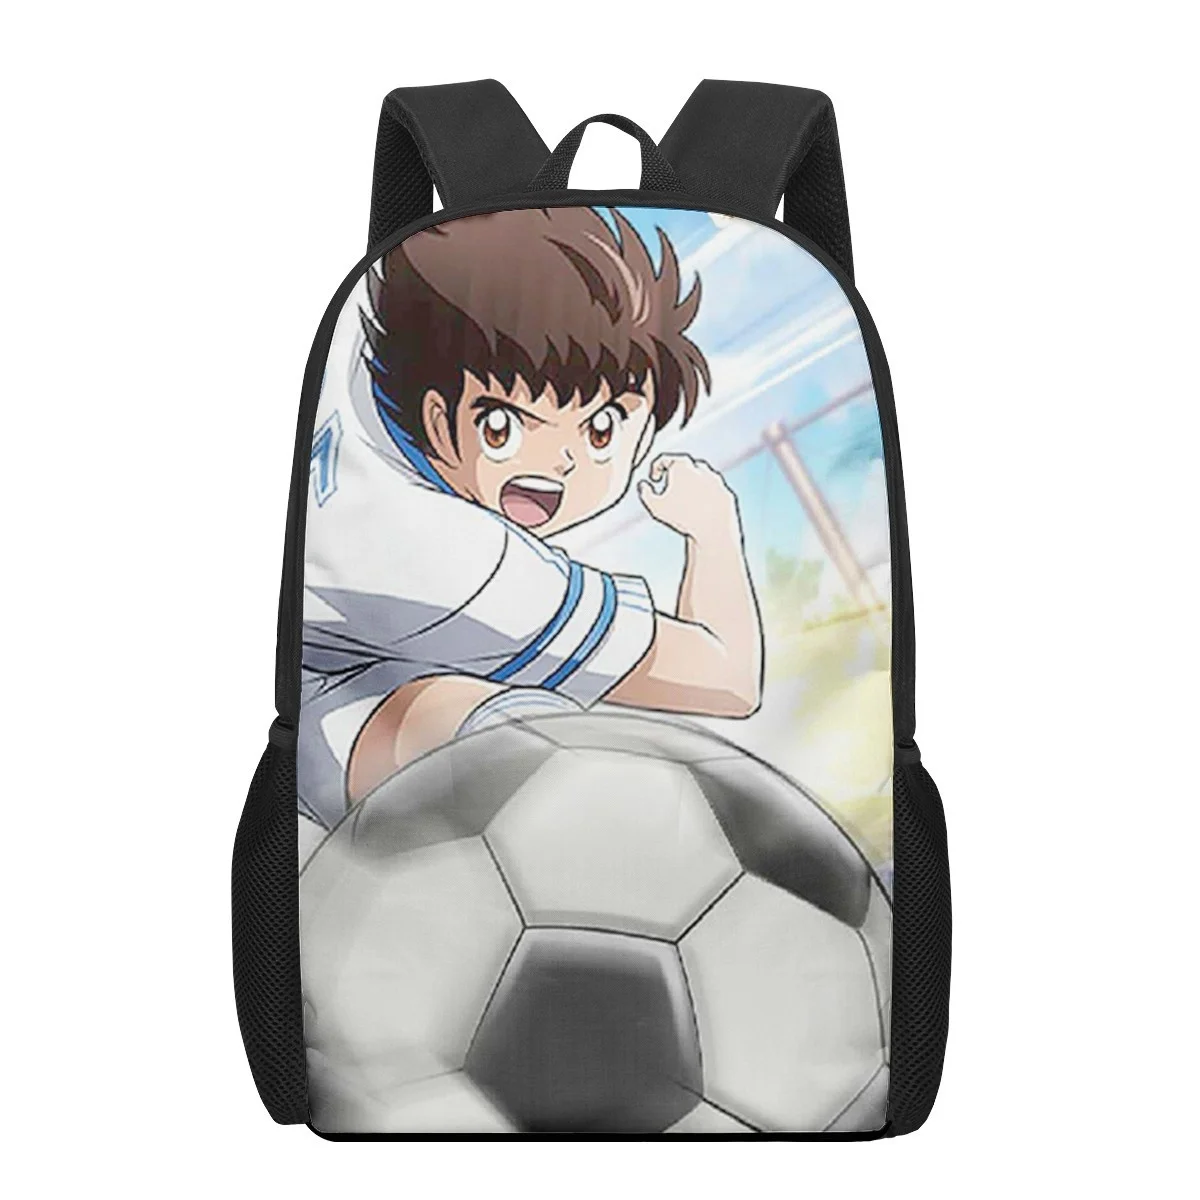 

Рюкзак с 3D-принтом в стиле аниме Captain Tsubasa школьные ранцы для мальчиков Girls, школьные рюкзаки, Детская сумка, рюкзак для детского сада, мужской рюкзак для книг